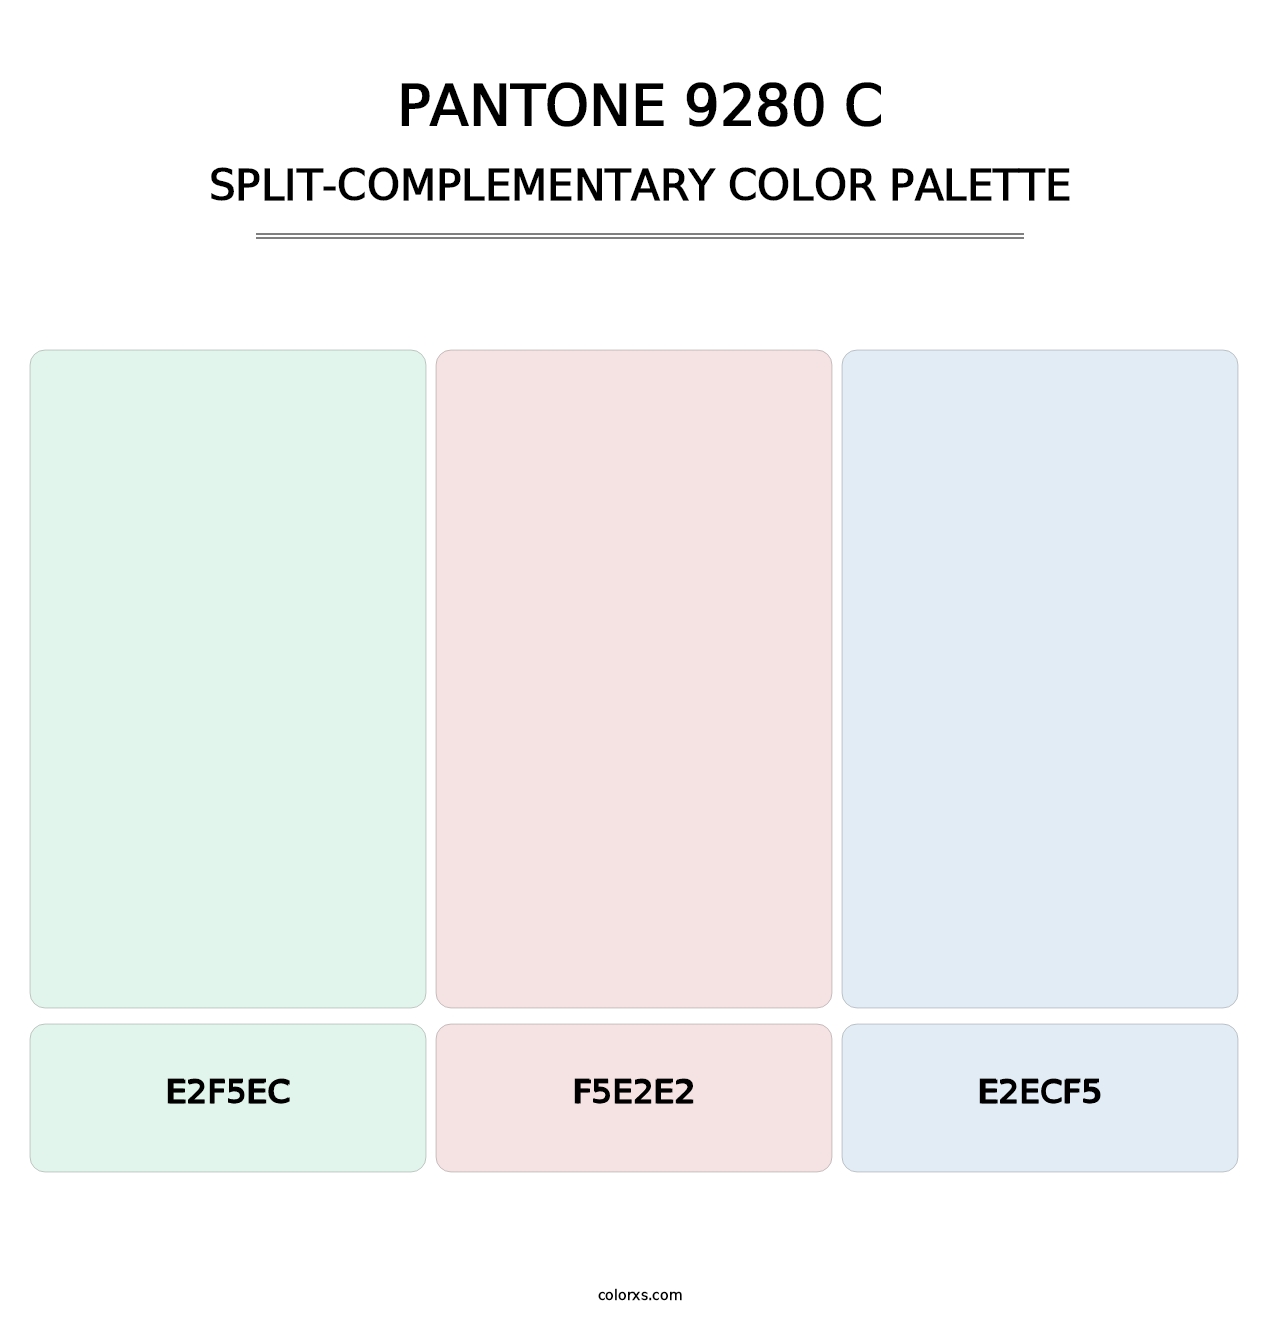 PANTONE 9280 C - Split-Complementary Color Palette